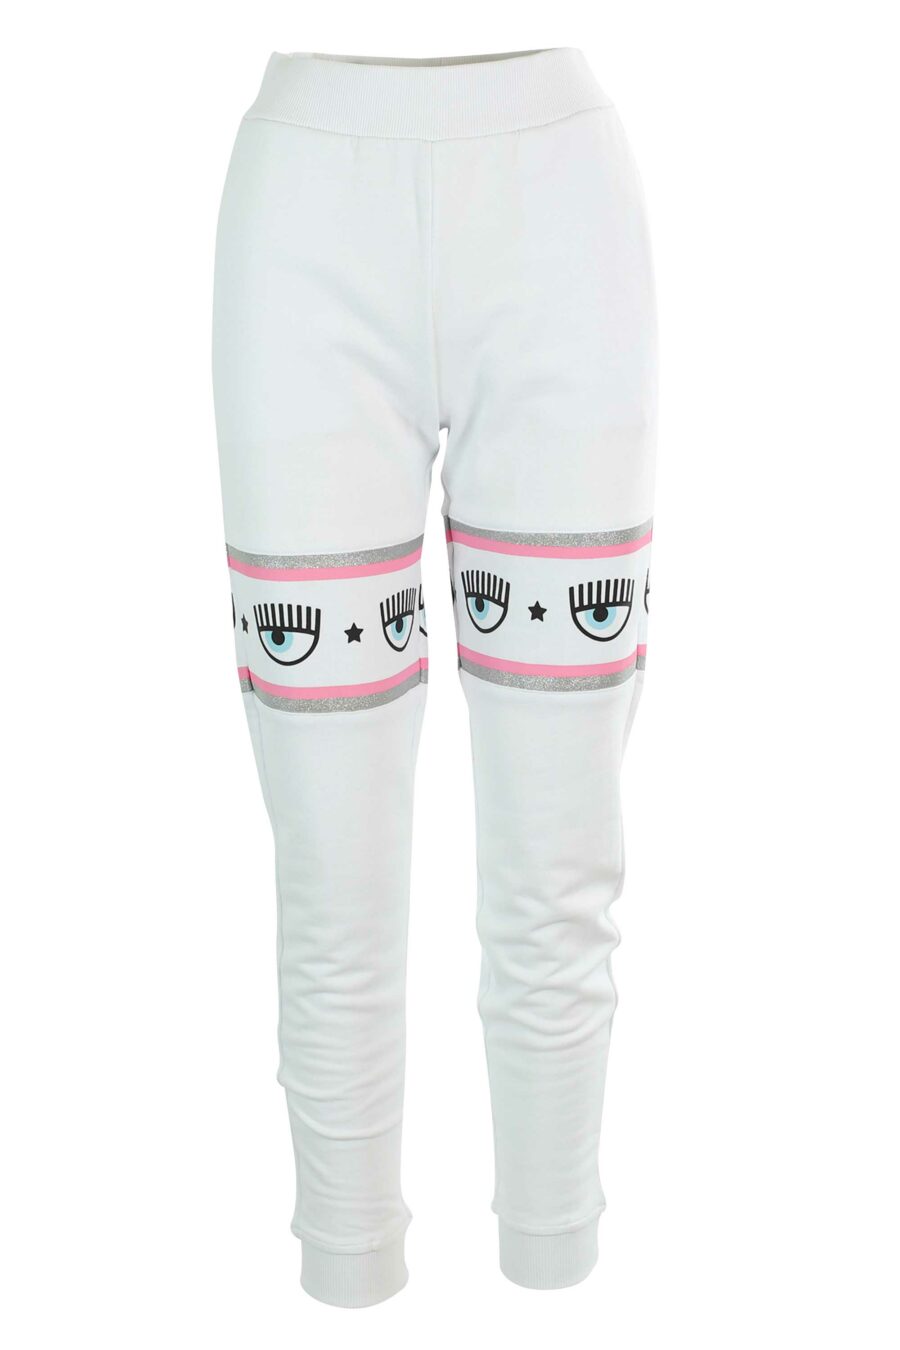 Weiße Trainingshose mit rosa und silbernem Bandlogo - 8052672419064